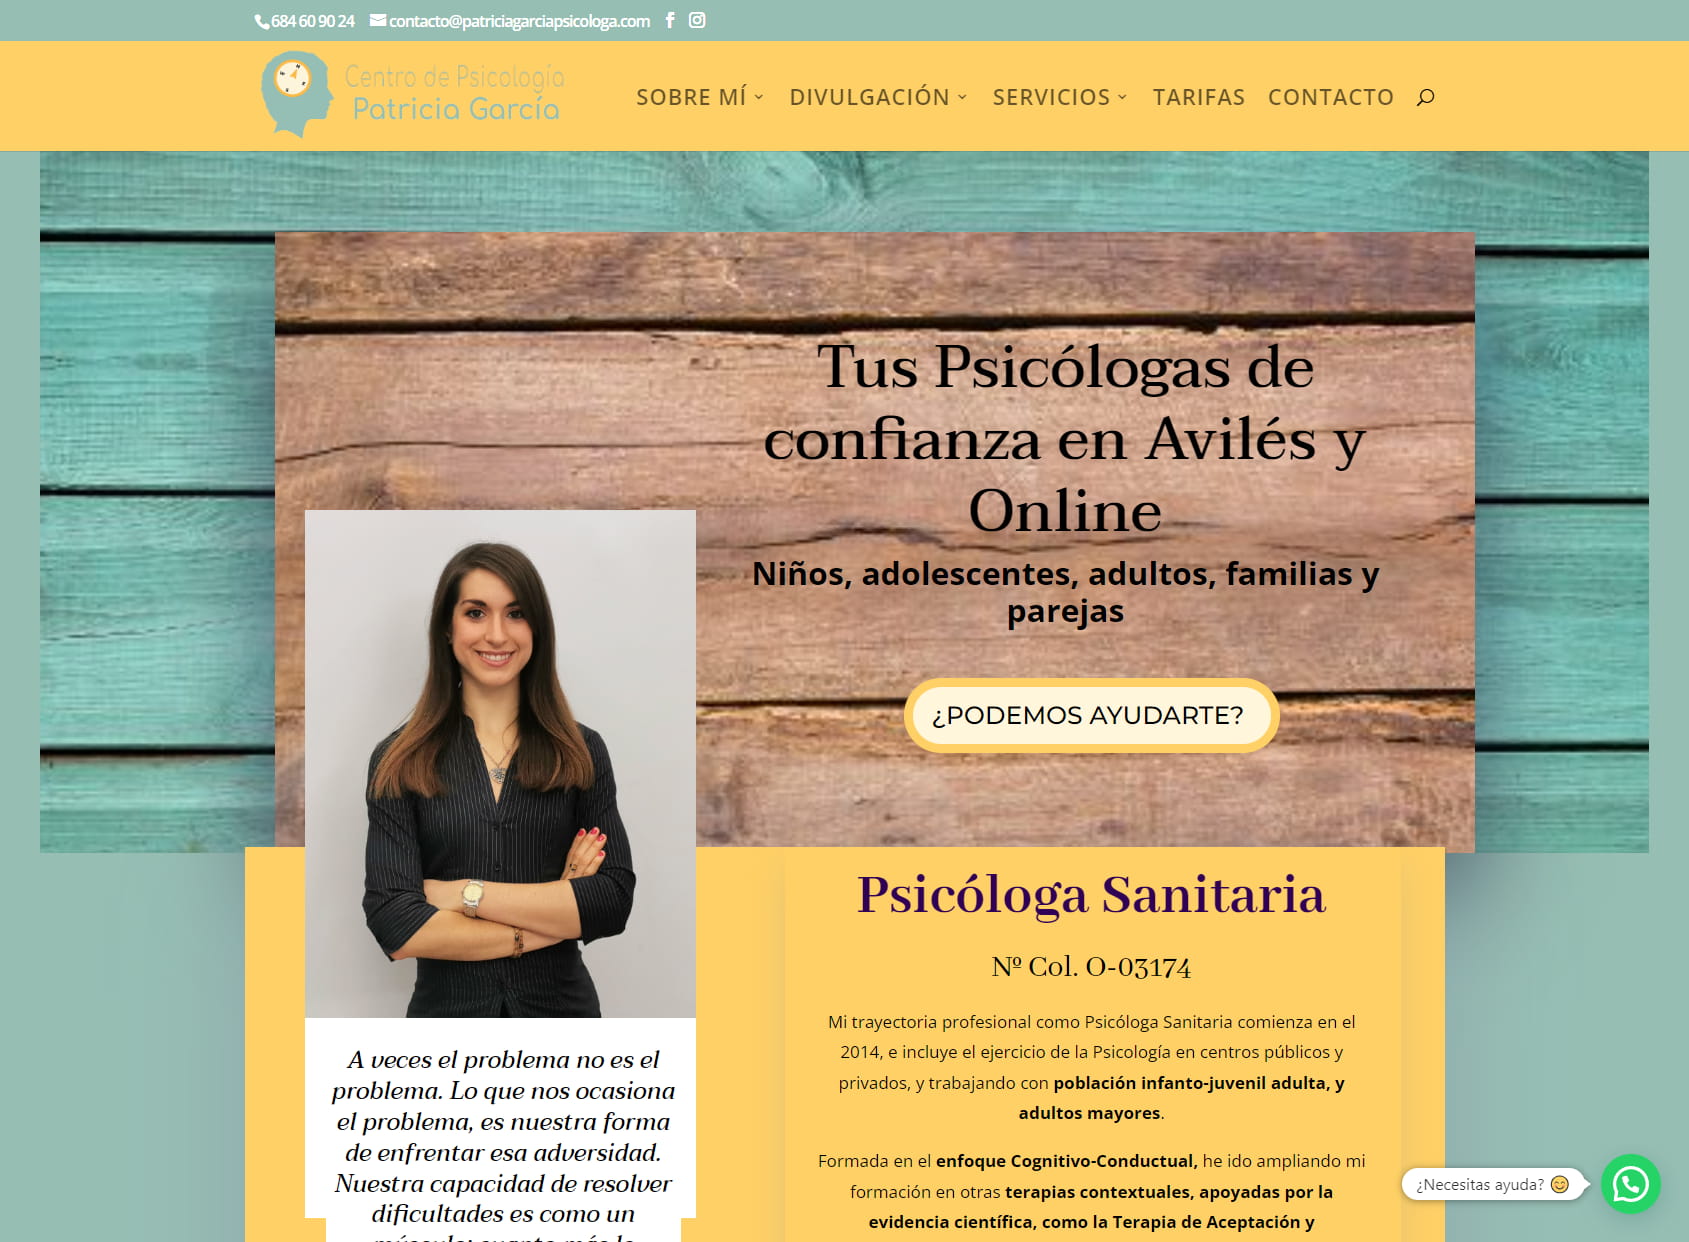 Centro de Psicología Patricia García - Psicólogas en Avilés y Online